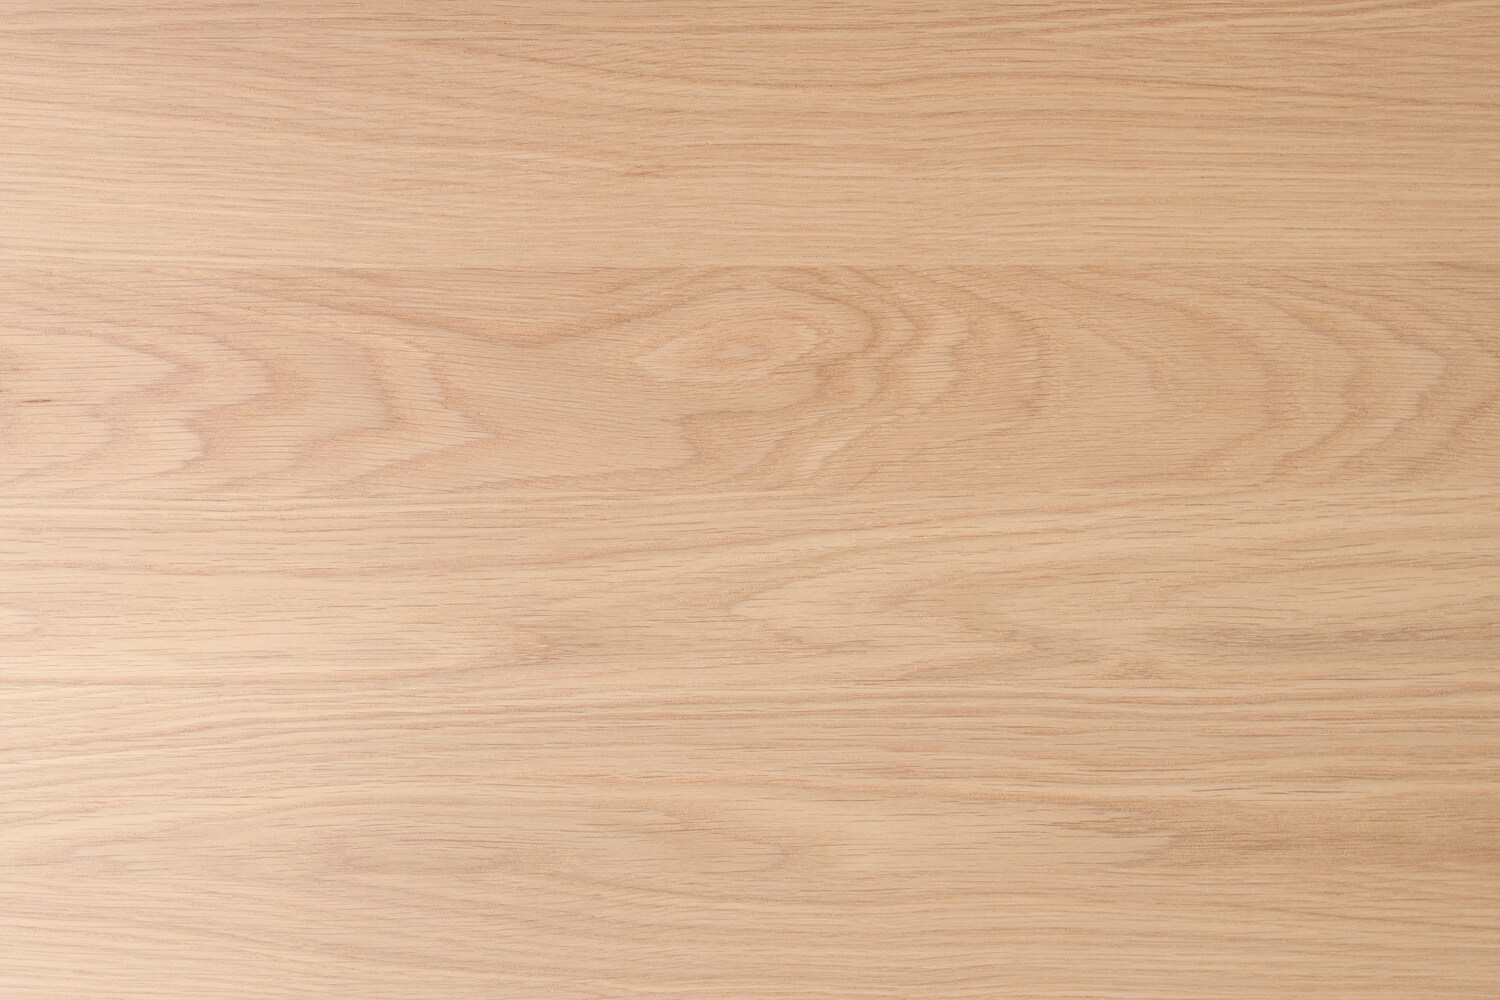 Hurford Flooring Genuine Oak Elegant Engineered Timber Raw - Online Flooring Store